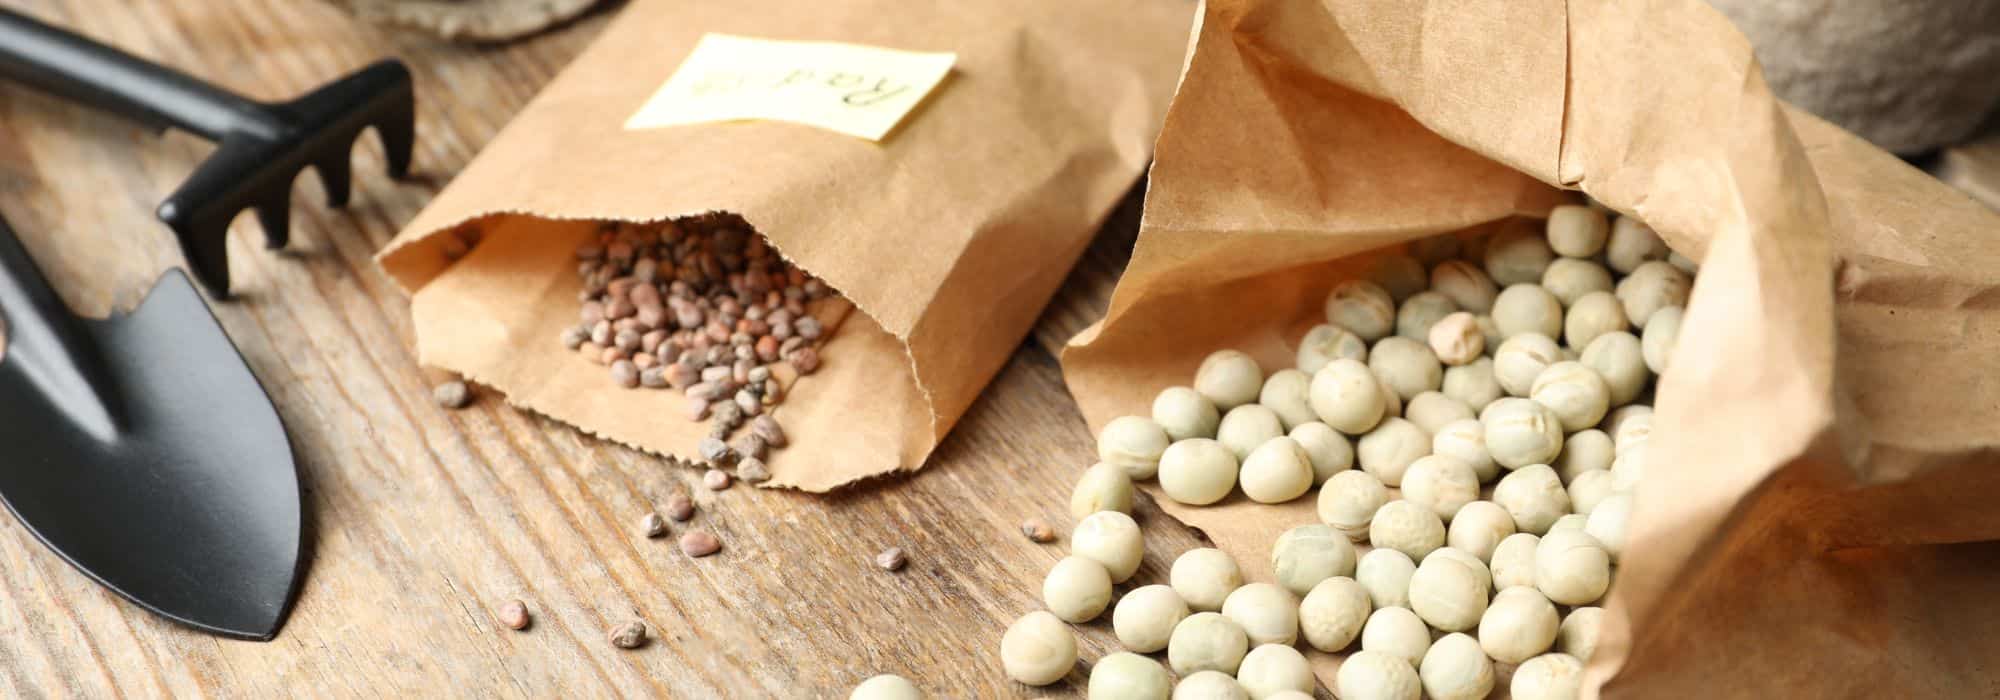 Les différents types de graines pour vos semis